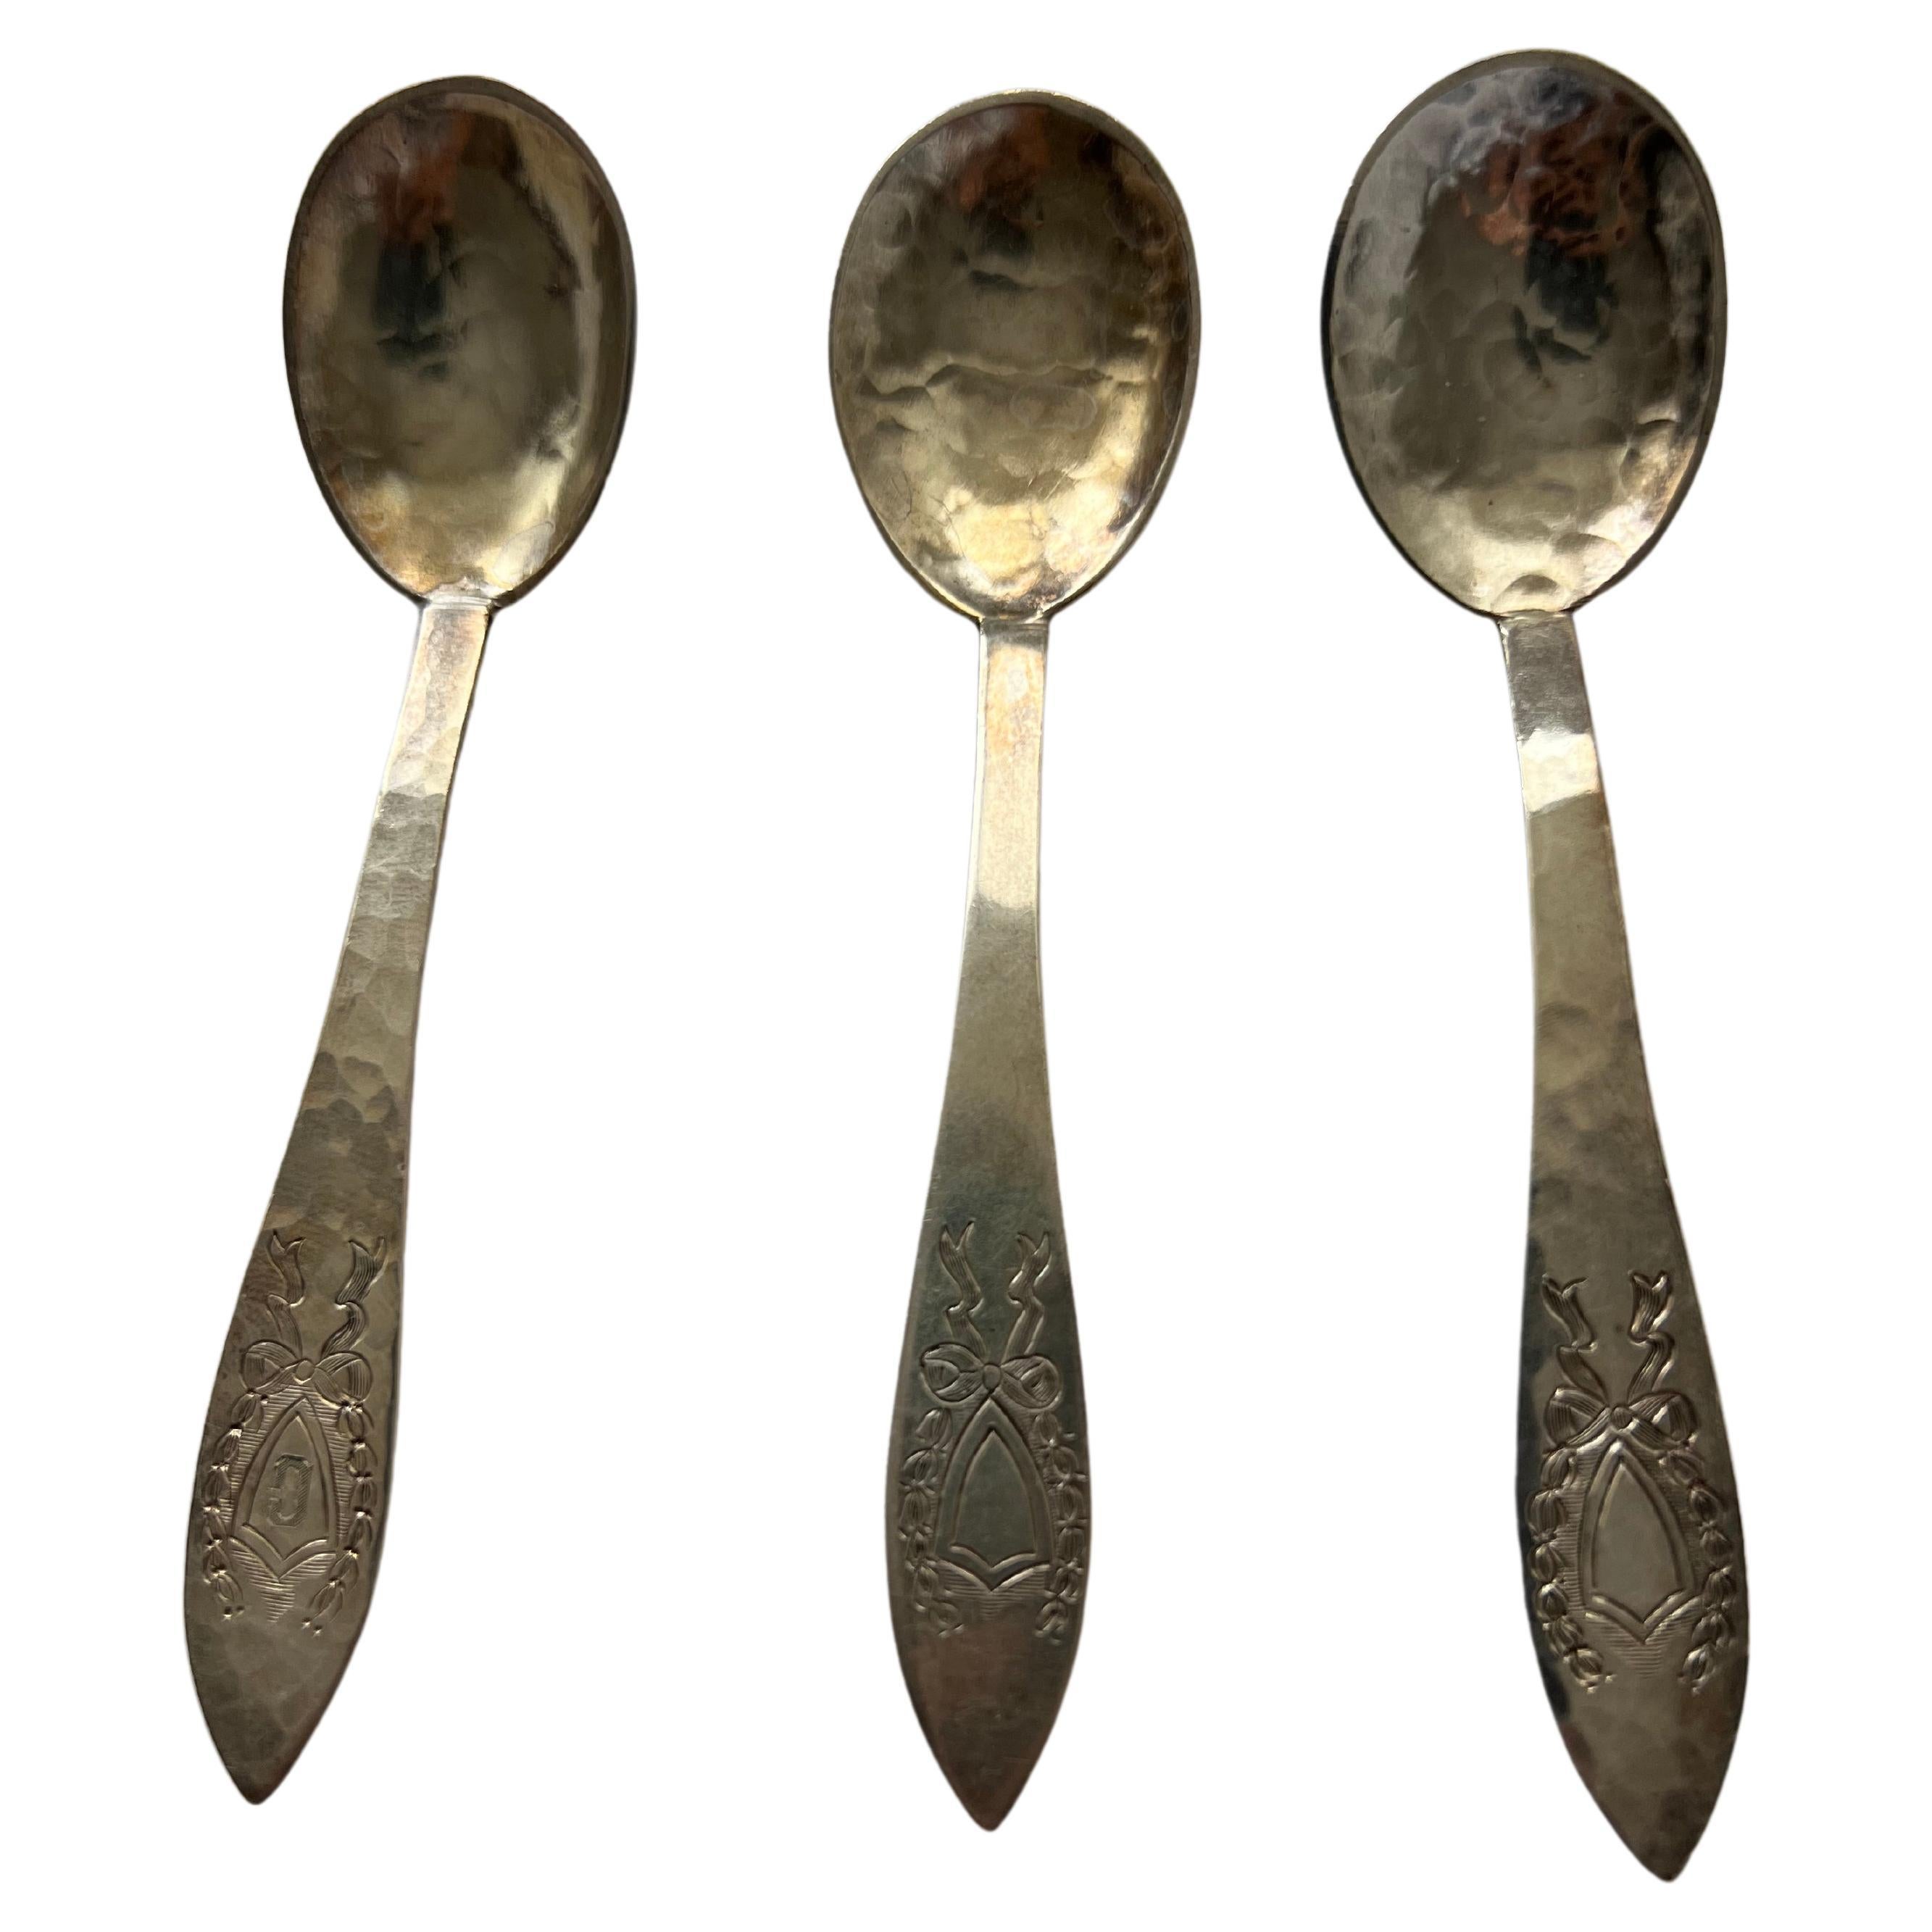 Antique Silver Tea Spoon Set Galt Vintage Estate Classic Decoration Kitchenware